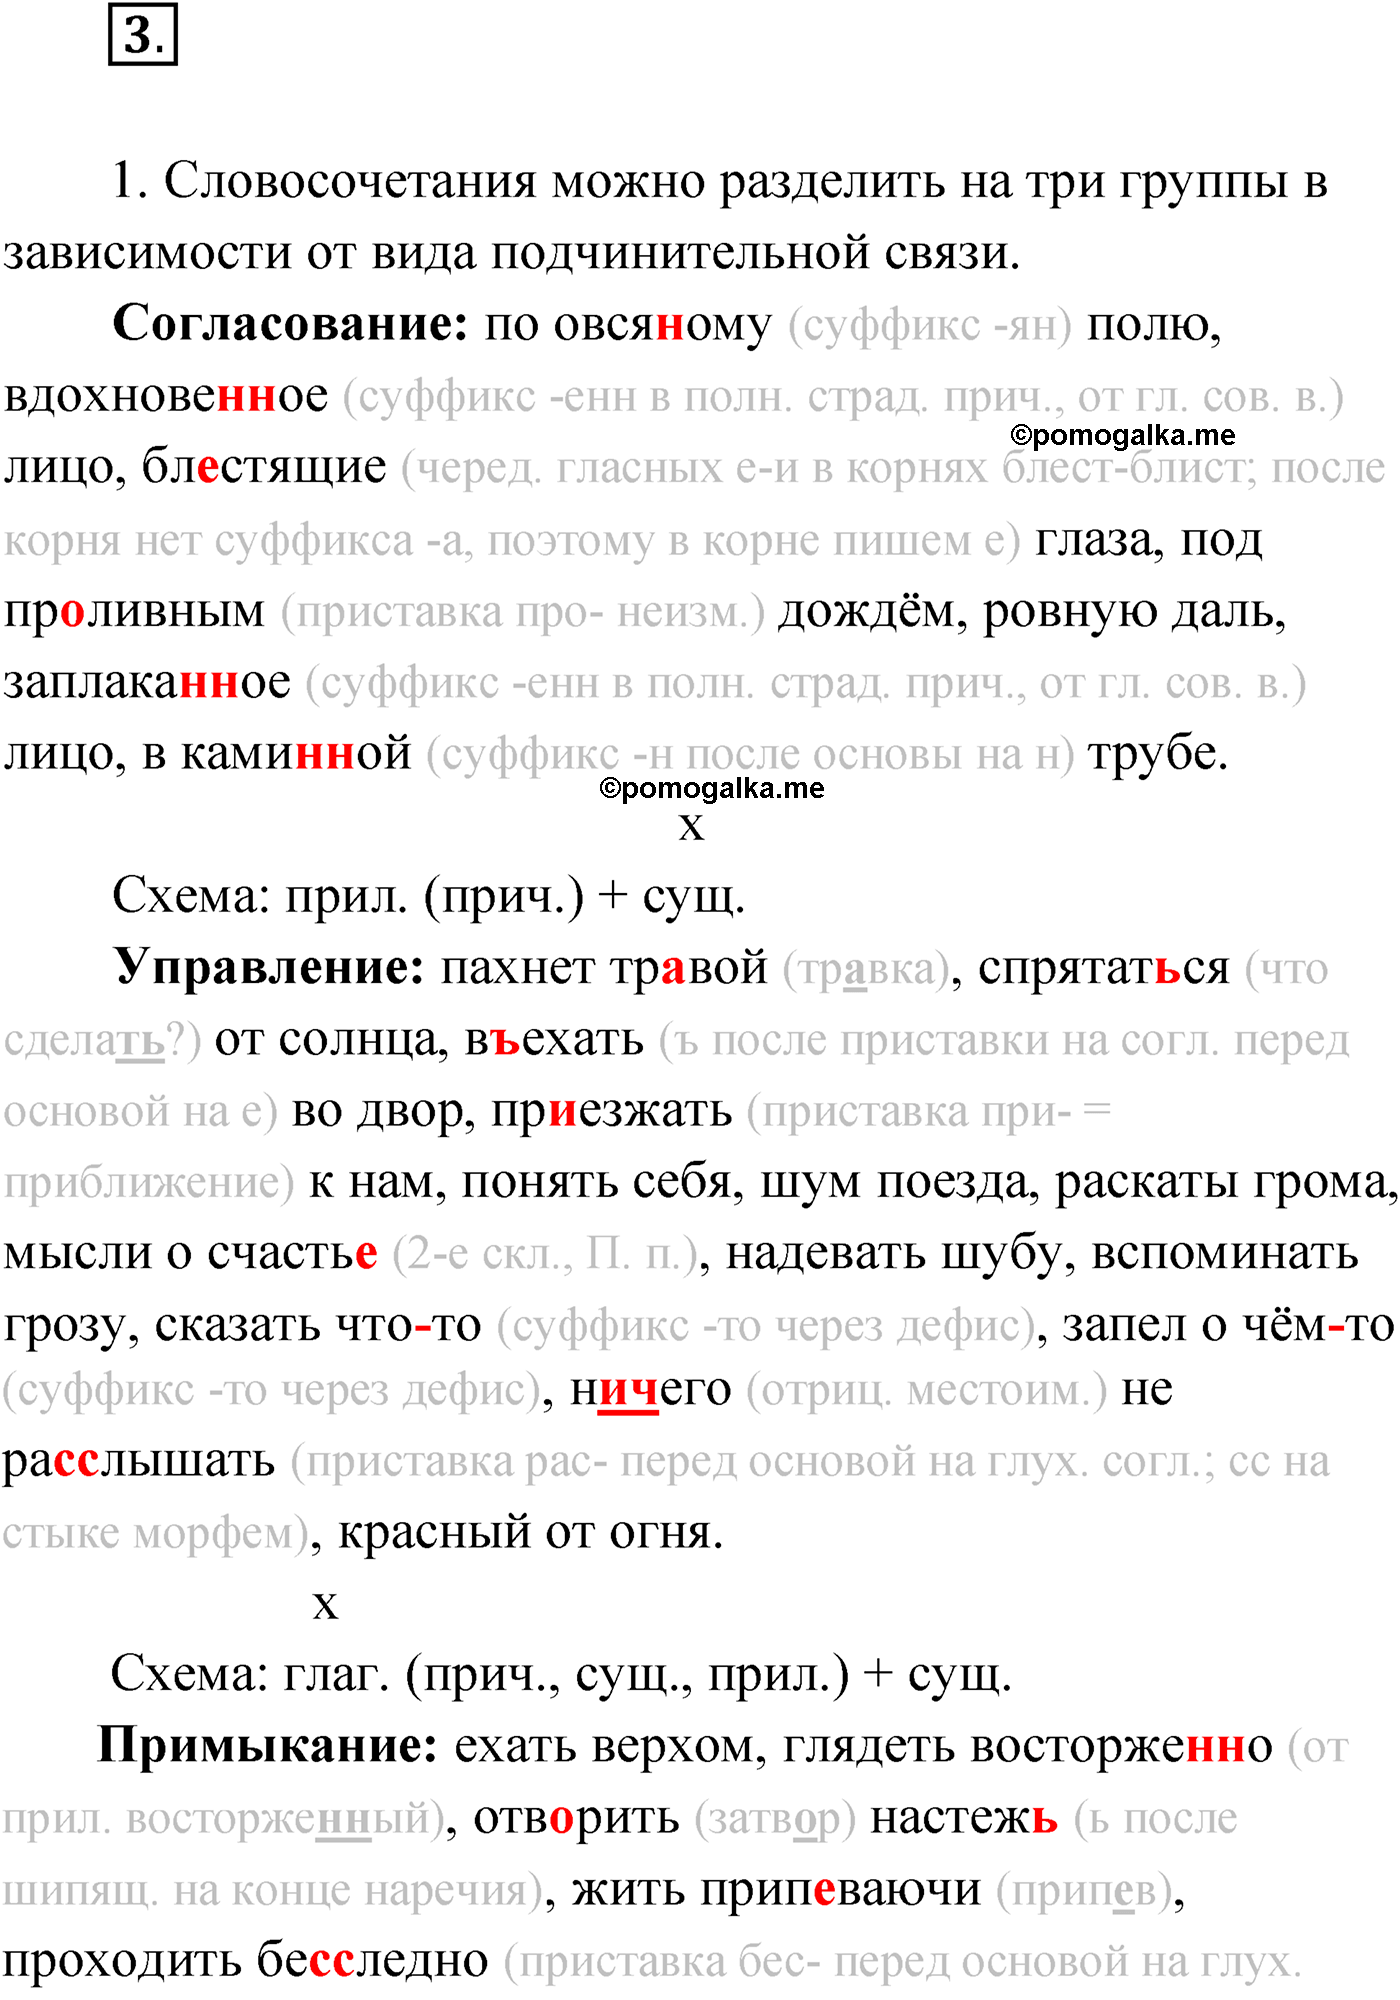 упражнение №3 русский язык 9 класс Мурина 2019 год